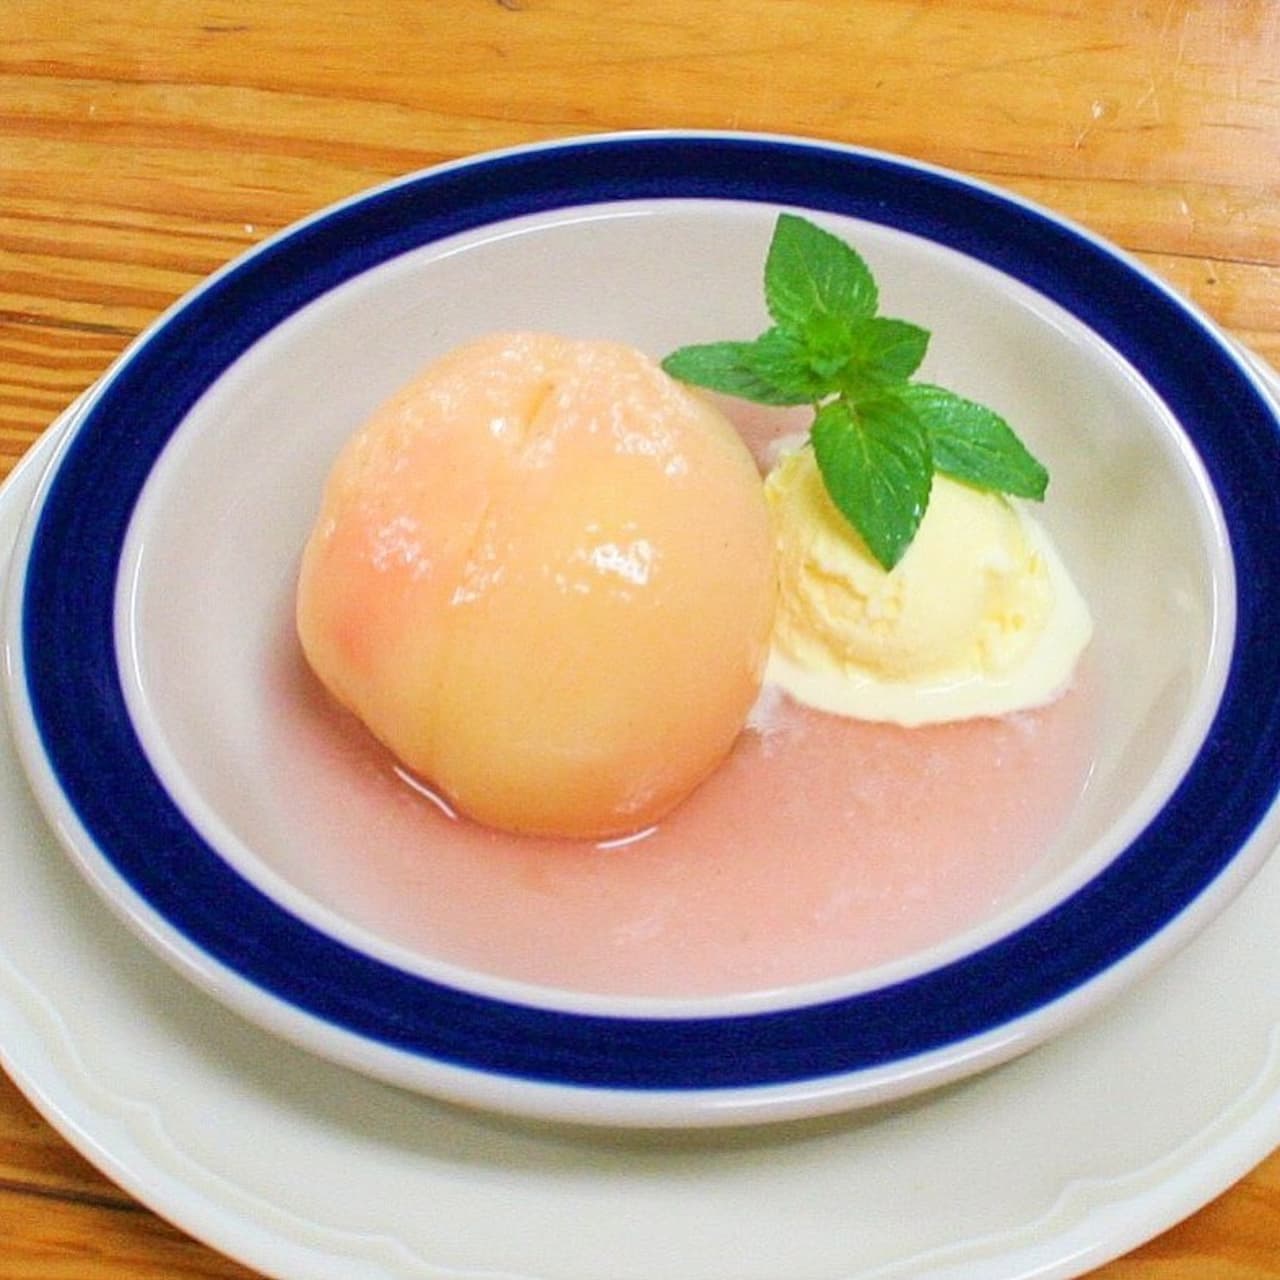 つばめグリル「桃のコンポート バニラアイスクリーム添え」店舗・期間限定